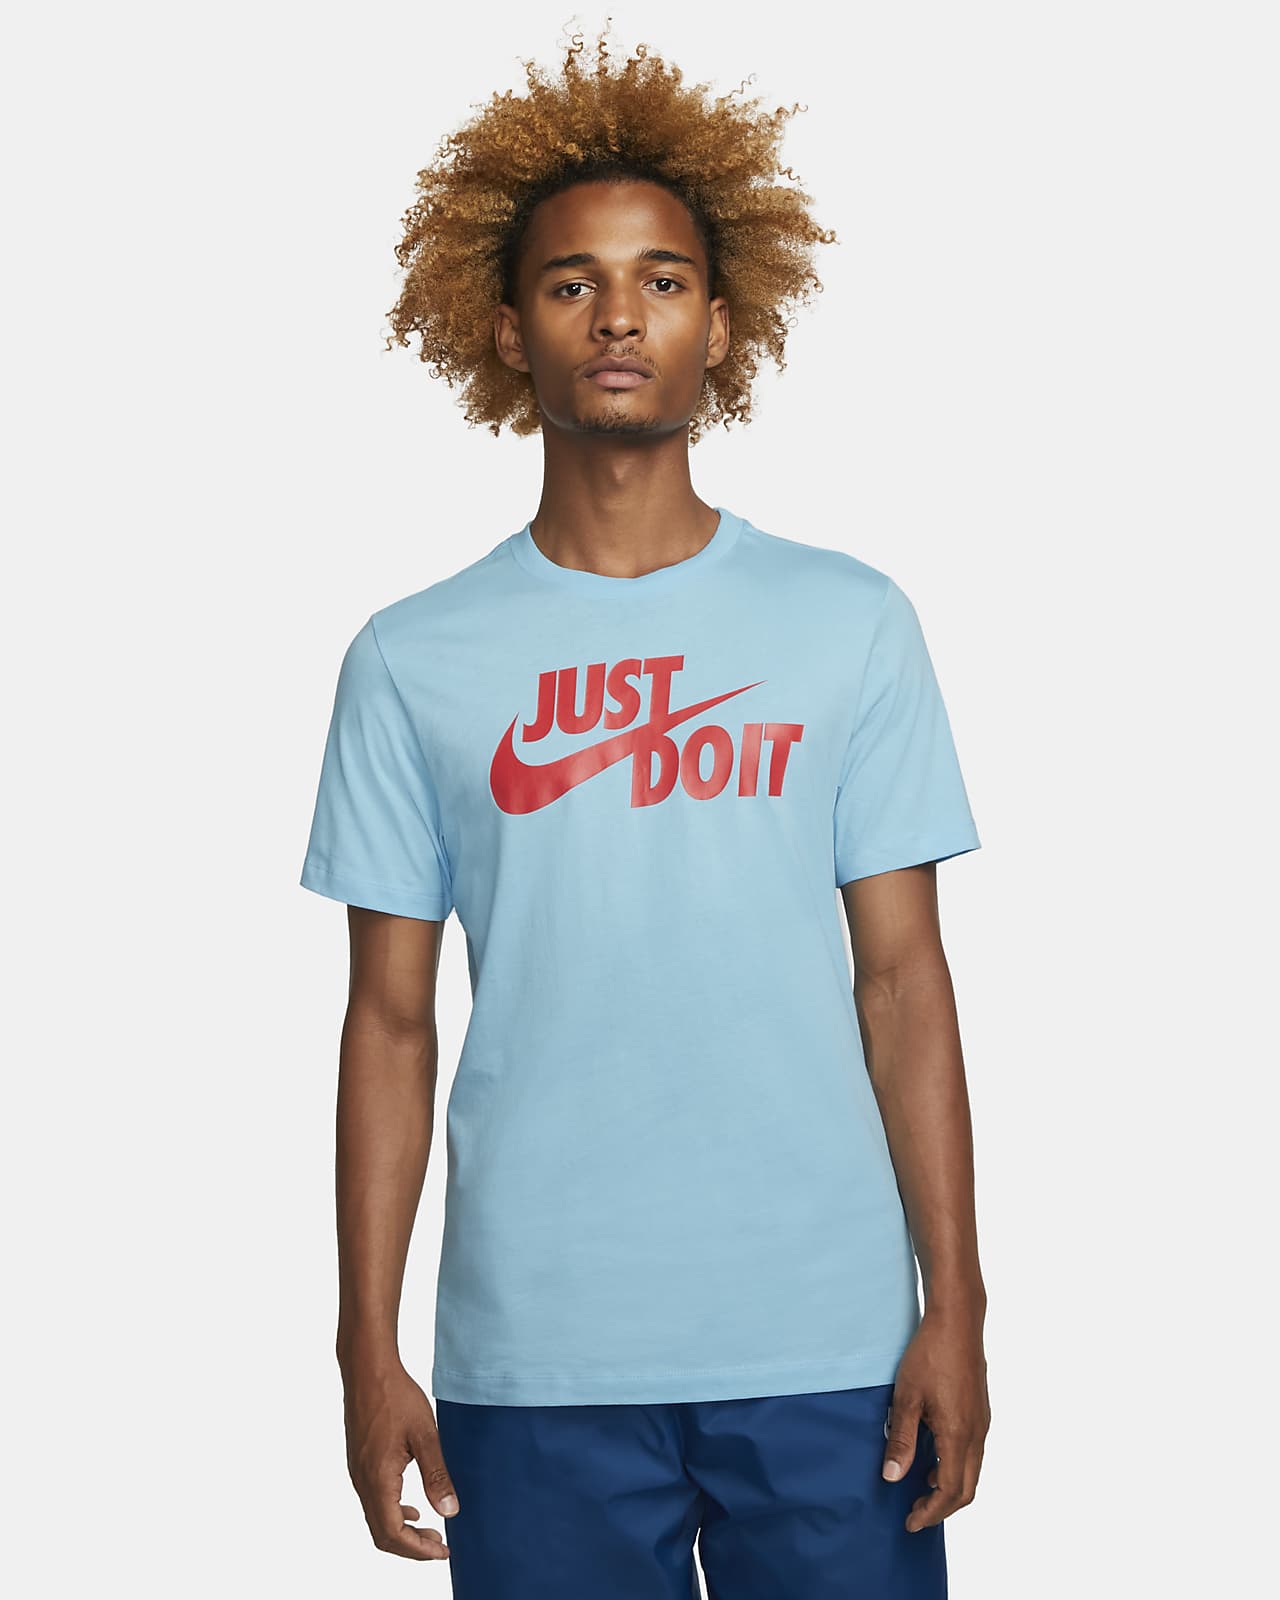 Nike Sportswear Men's T-Shirt. MY